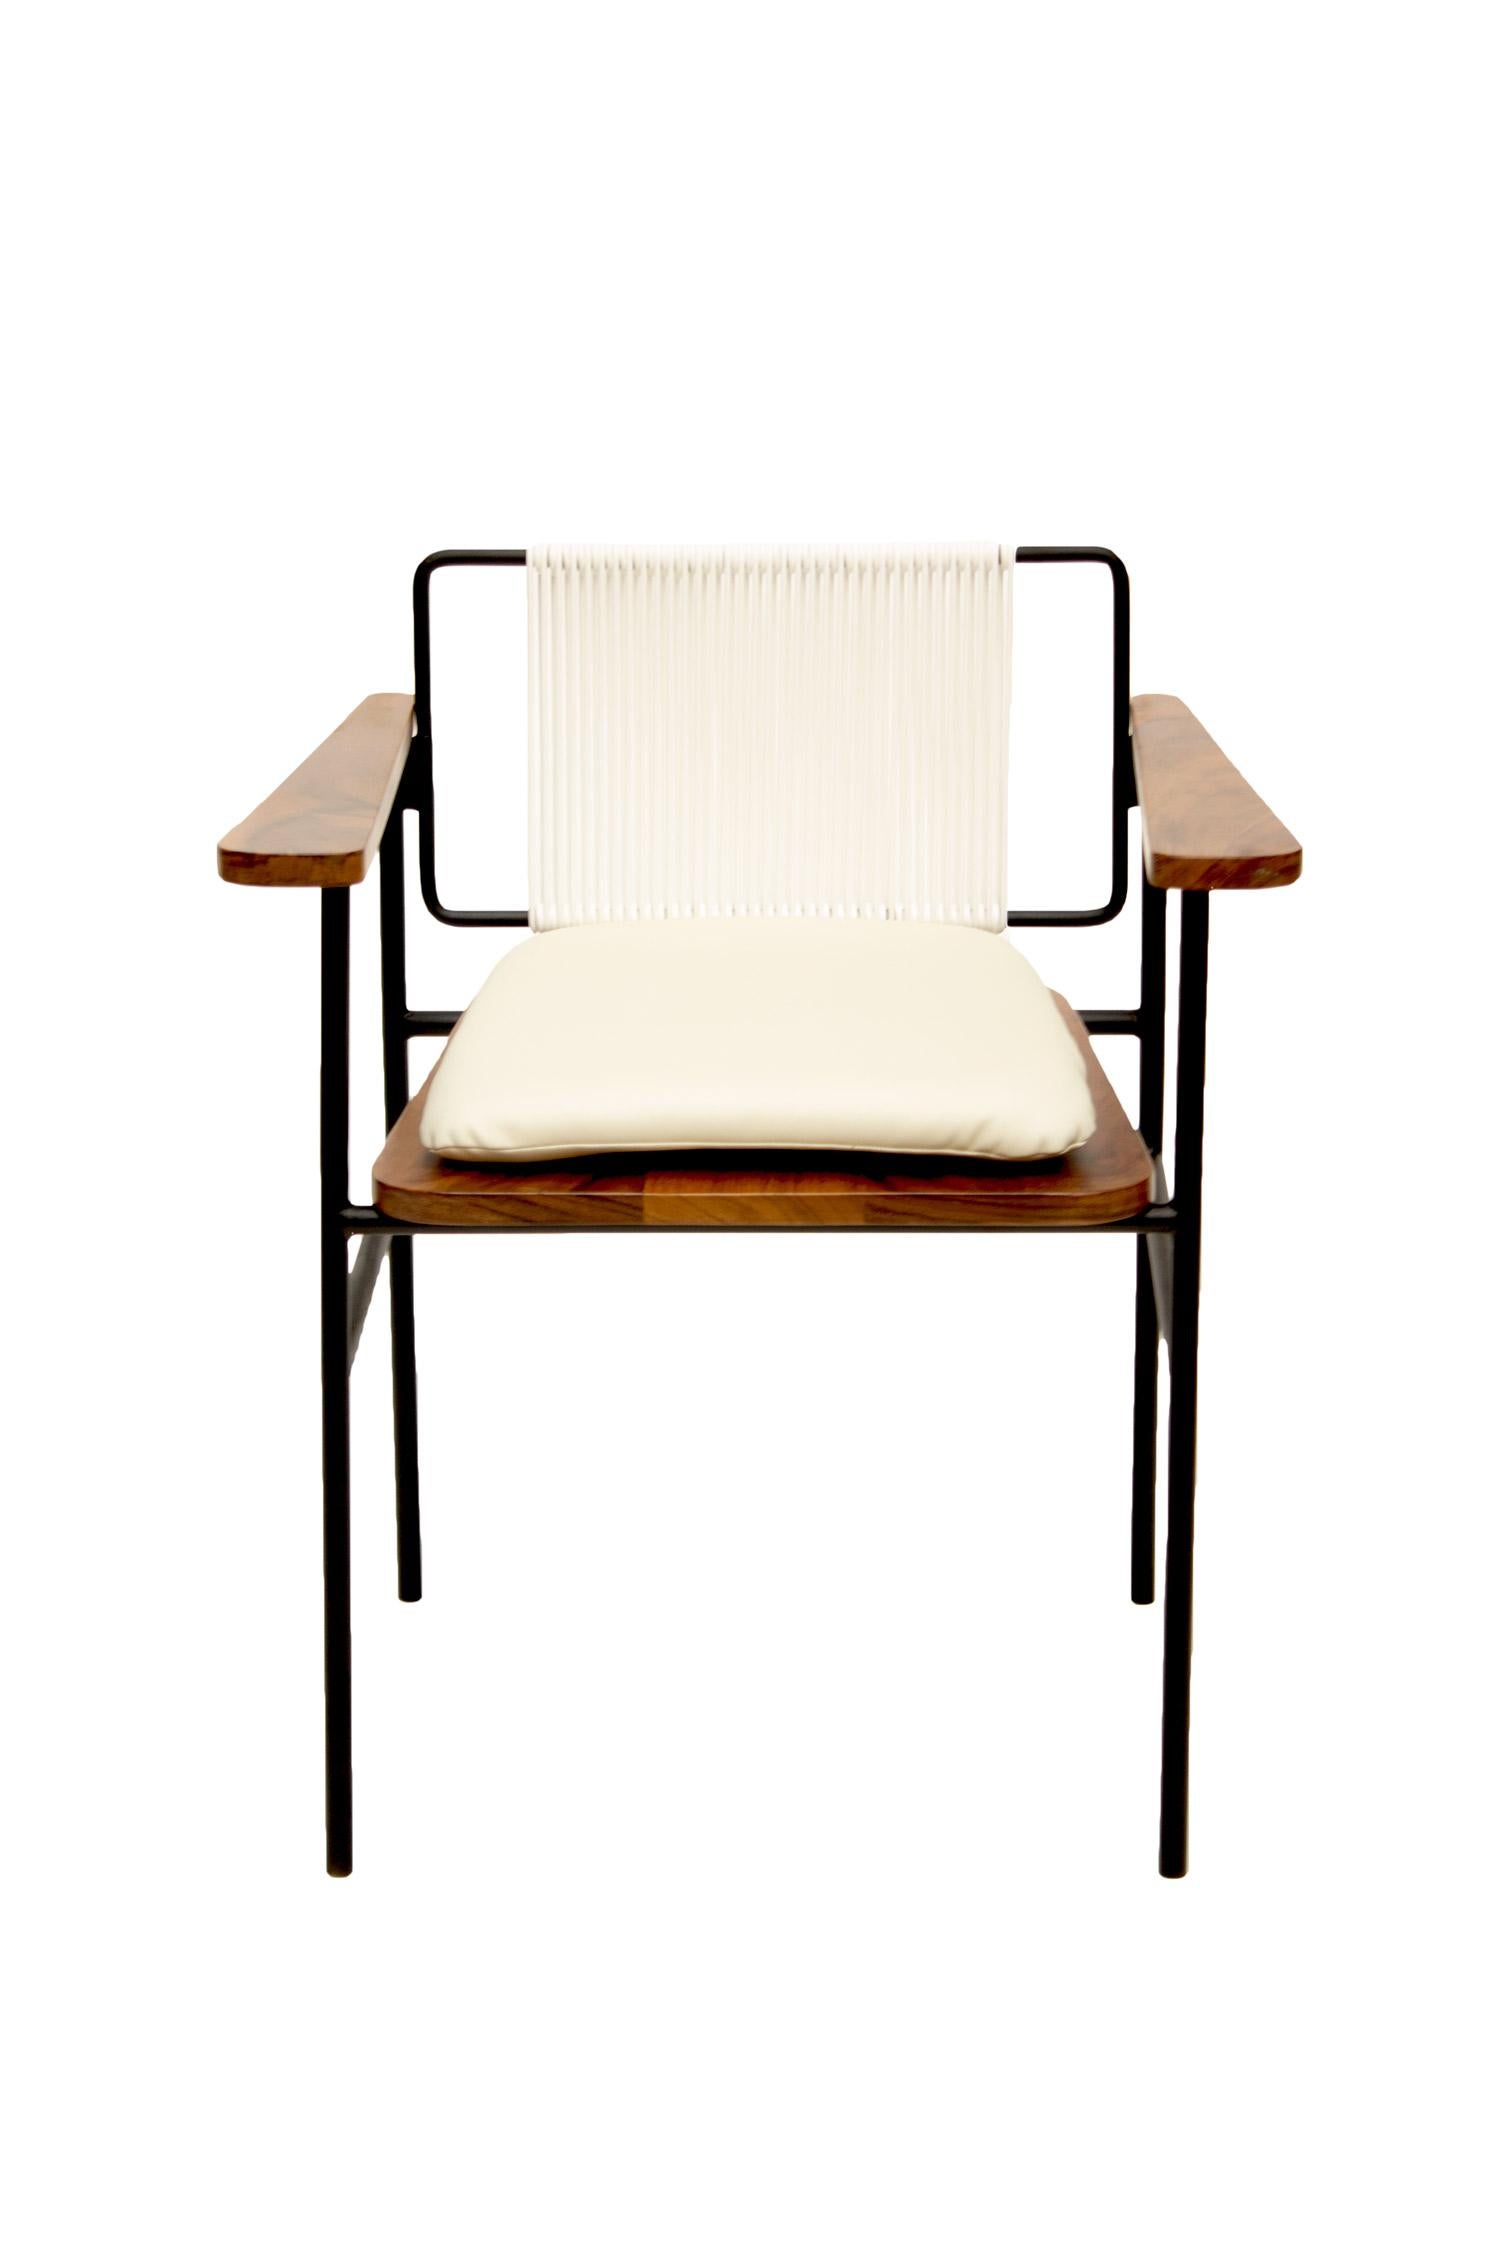 Une création de León Design/One de Mexico : un chef-d'œuvre d'assise unique en son genre, fabriqué avec de l'acier et du bois tropical de parota.

Cette chaise exceptionnelle présente une assise et des accoudoirs en bois de parota méticuleusement